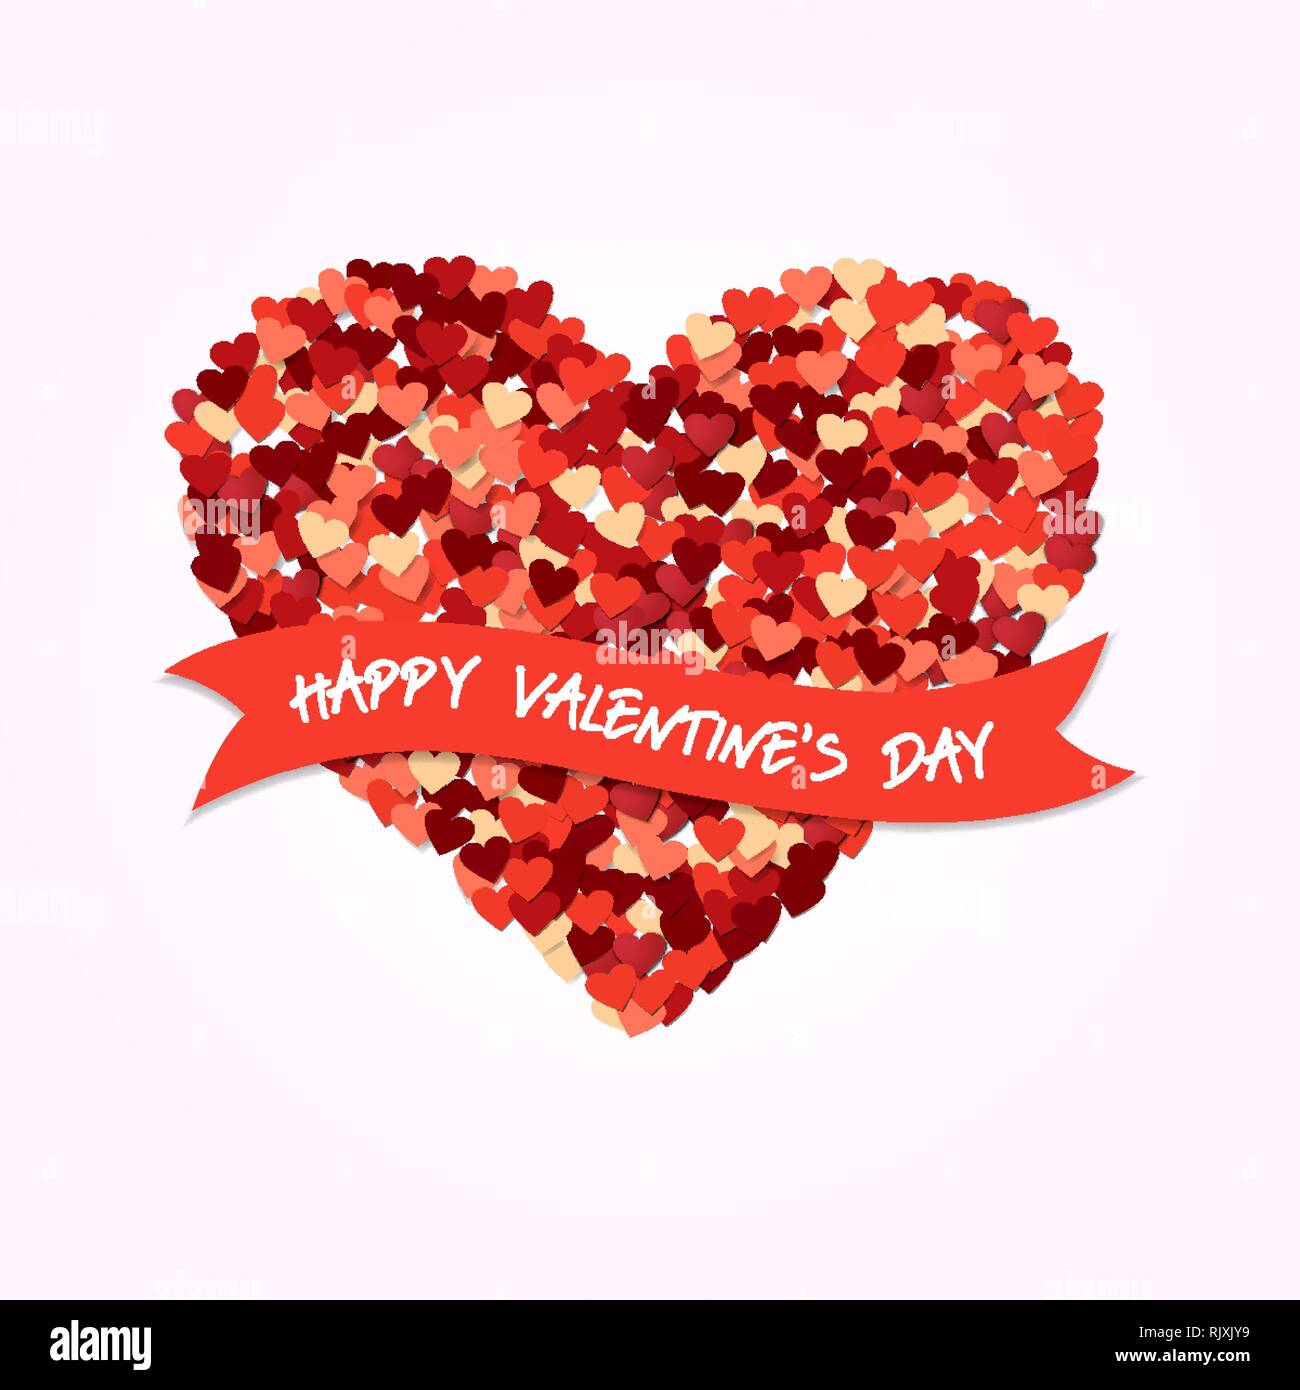 Happy Valentines Day love concept illustration. Conception de forme coeur rouge composition avec maison de typographie citer. Illustration de Vecteur